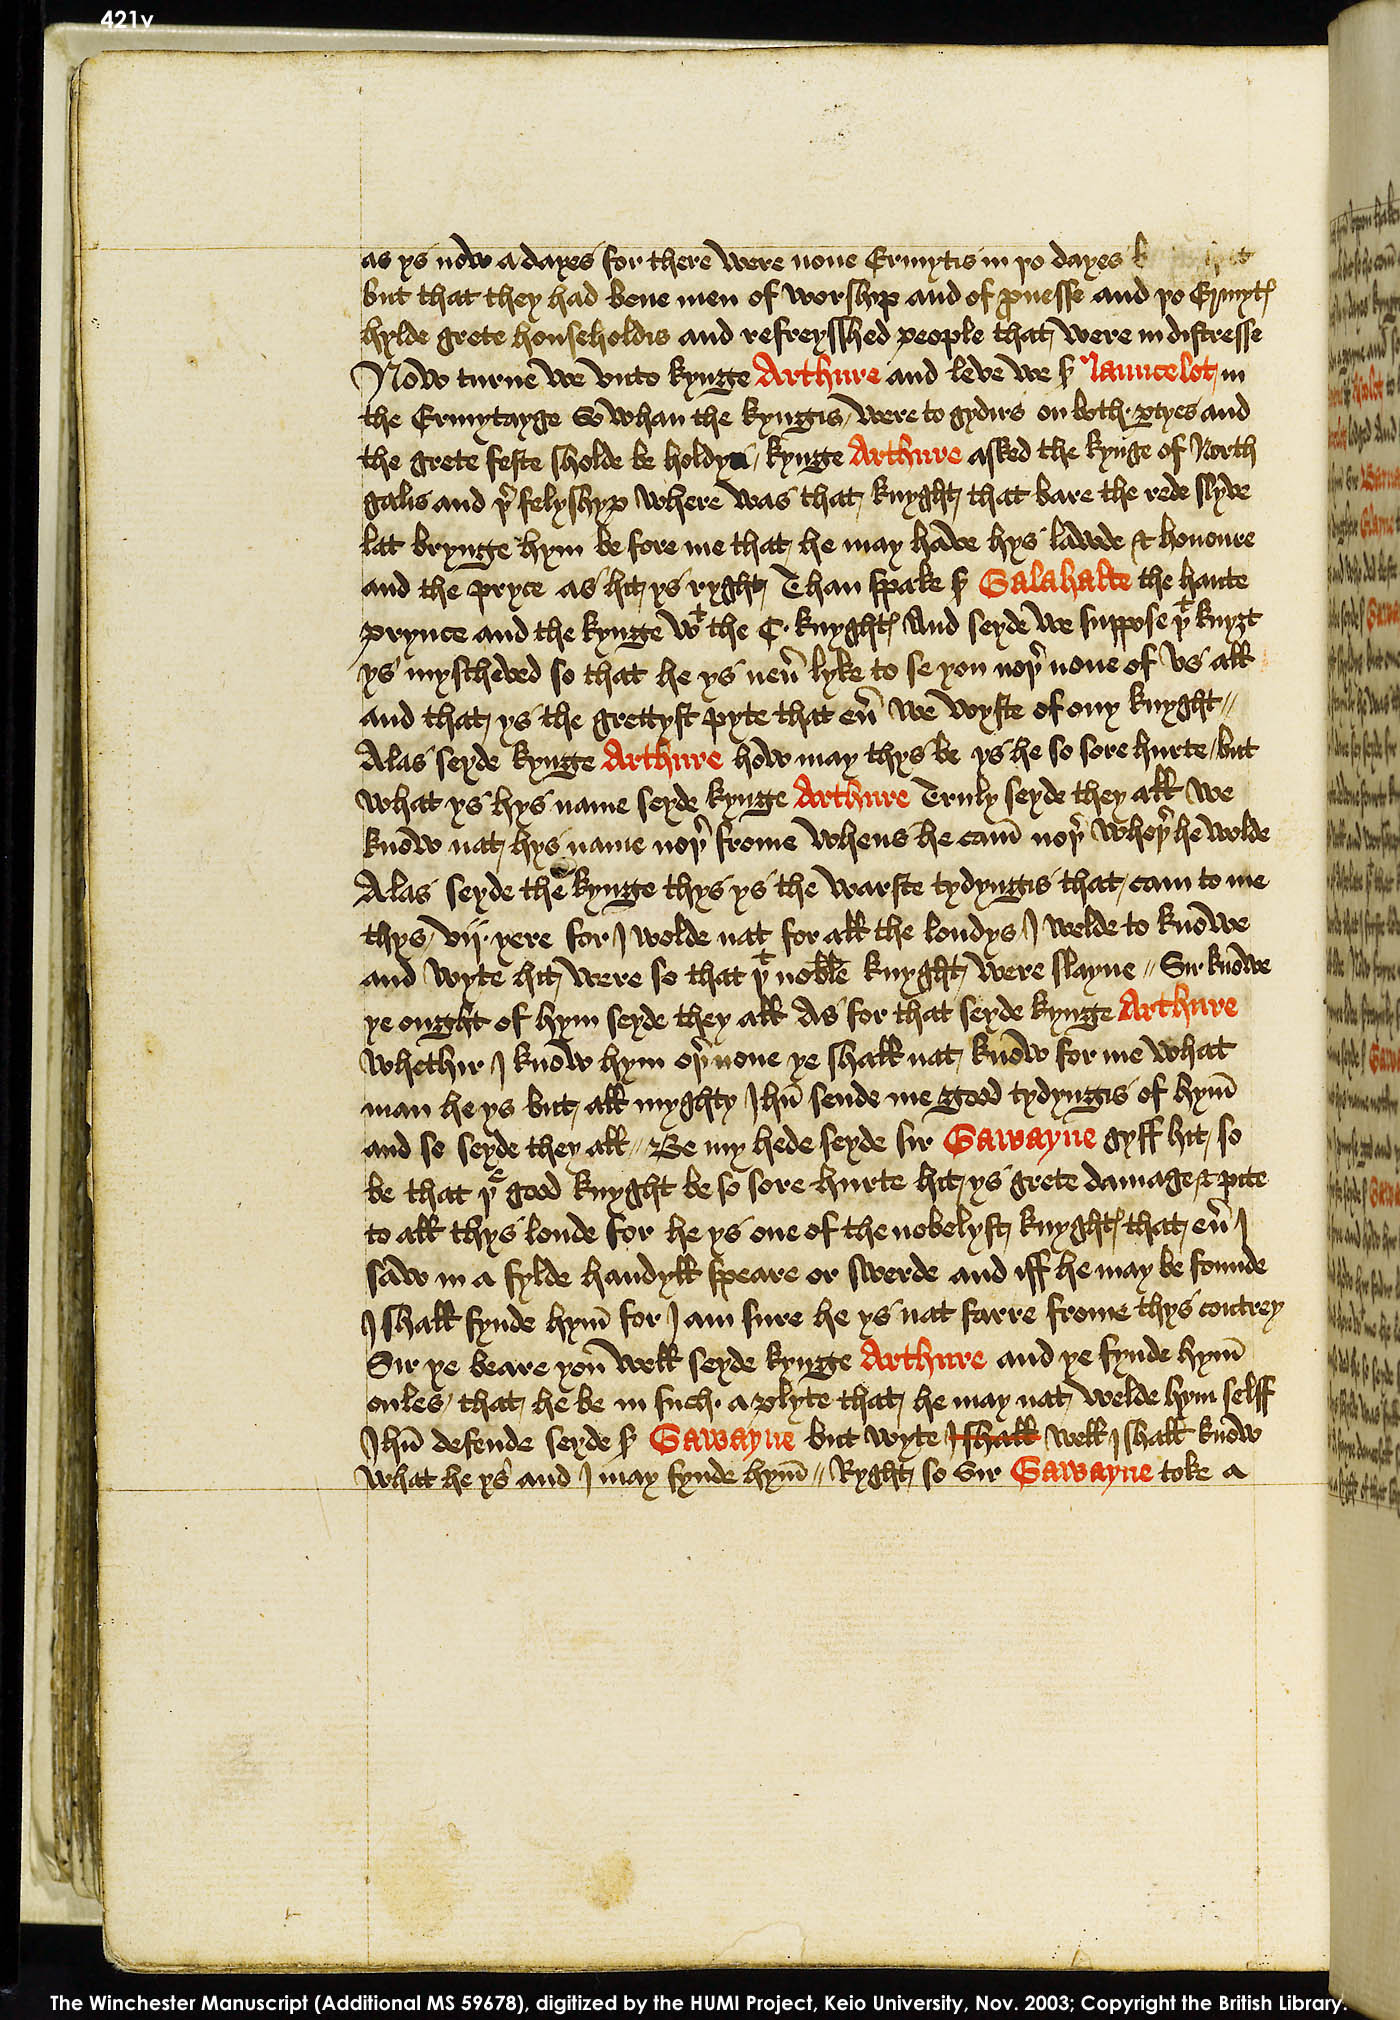 Folio 421v